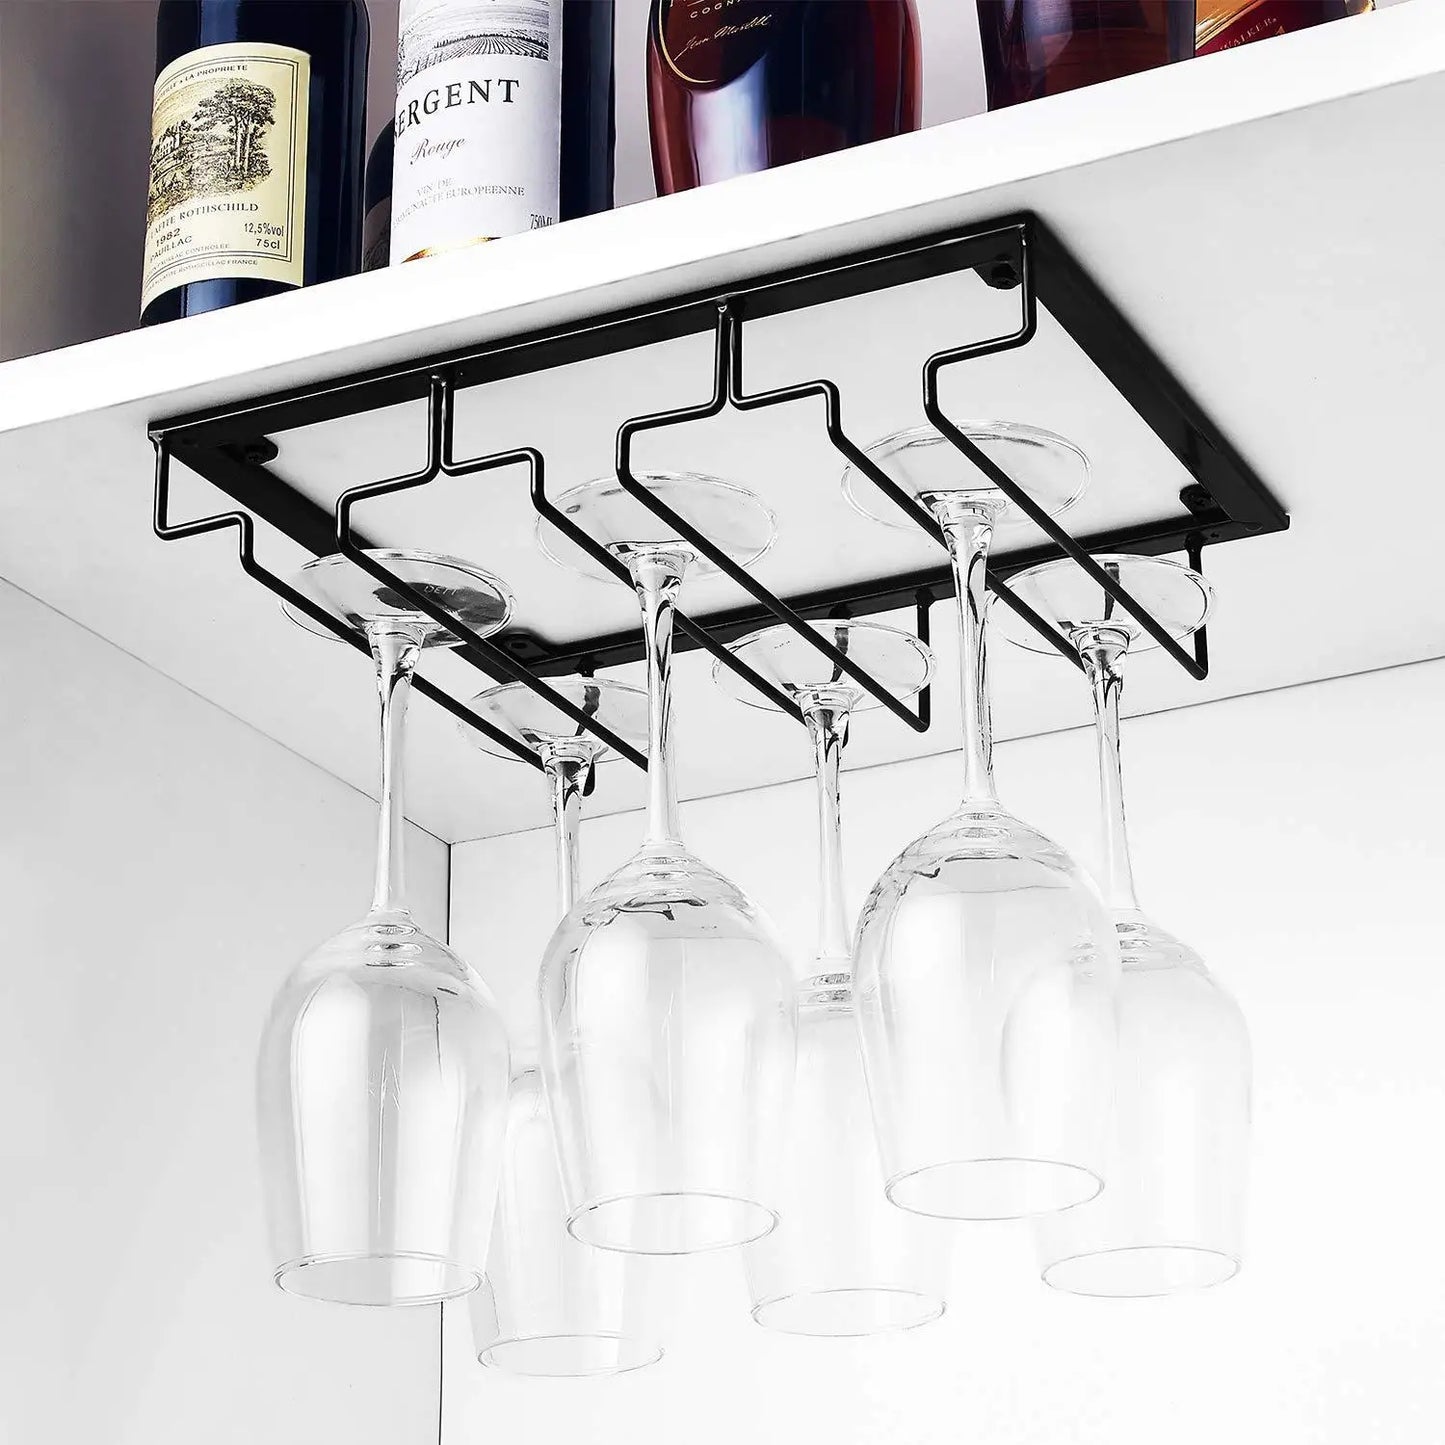 Wall Mount Wine Glass Holder Goblet Hanging Rack Stemware Storage Organizer Wine Glass Rack Home Kitchen Bar Accessories